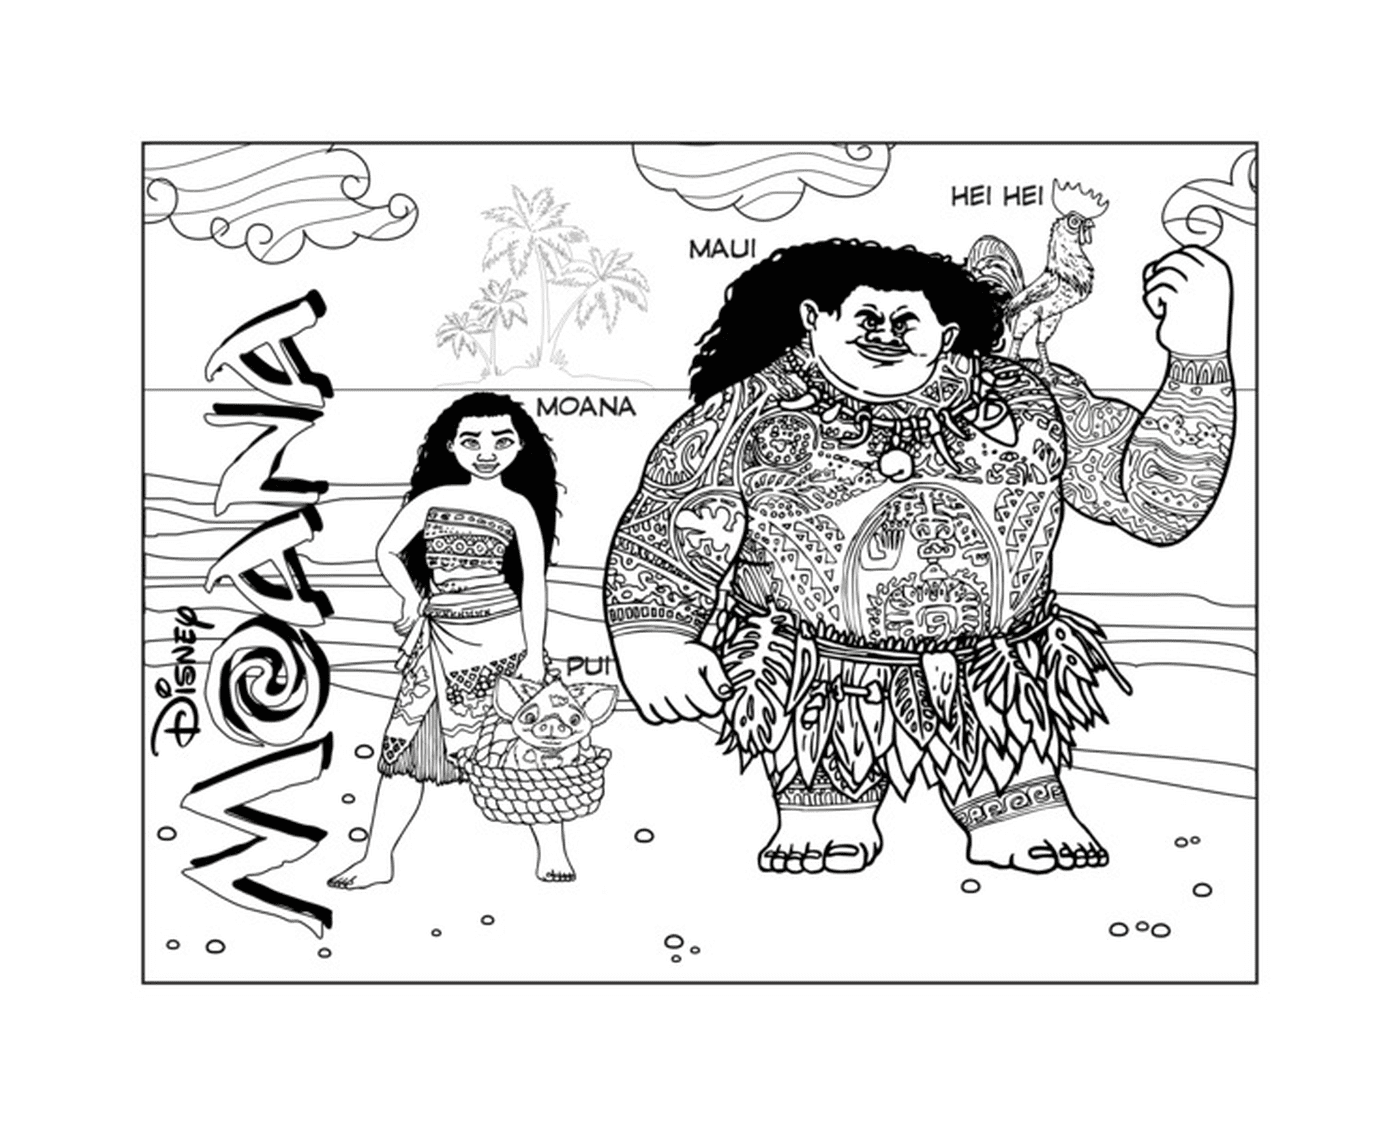  Моана и Мауи, дуэт авантюристов 